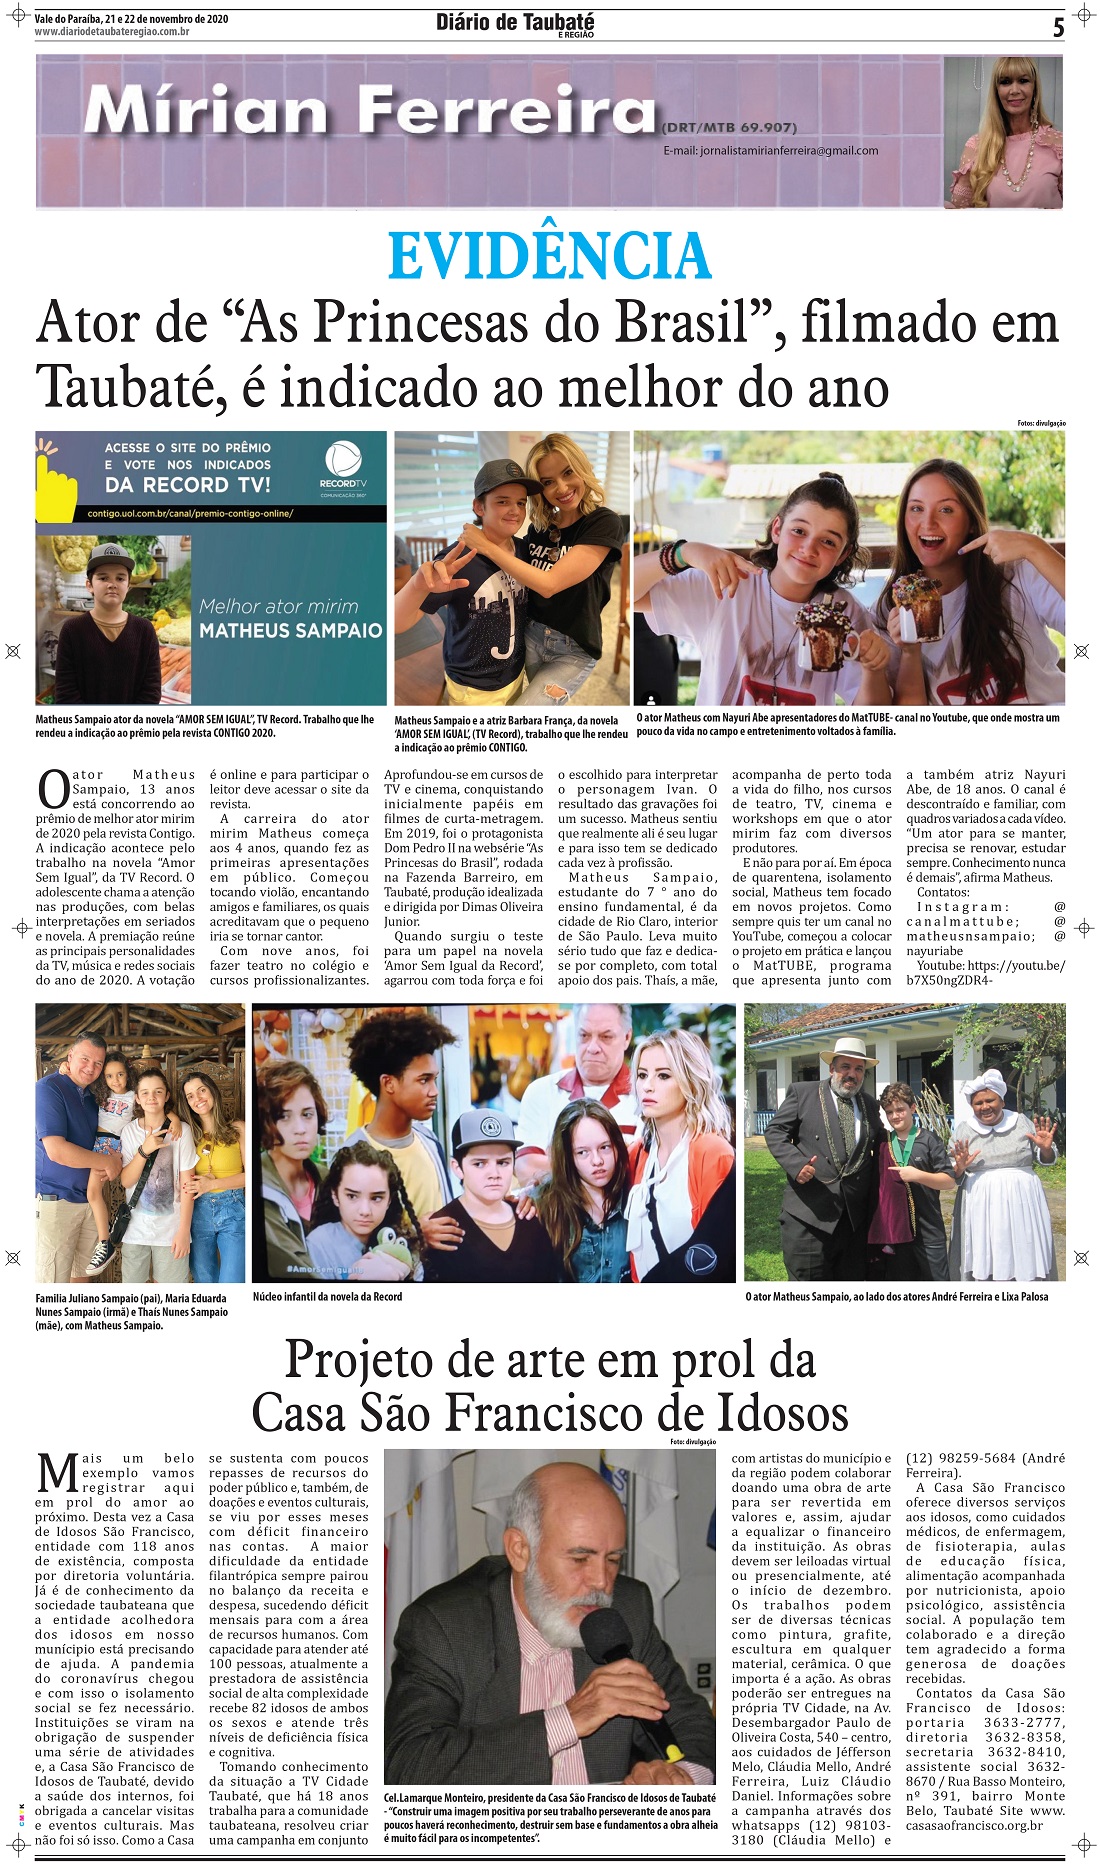 Evidência – Ator de “As Princesas do Brasil”, filmado em Taubaté, é indicado ao melhor do ano